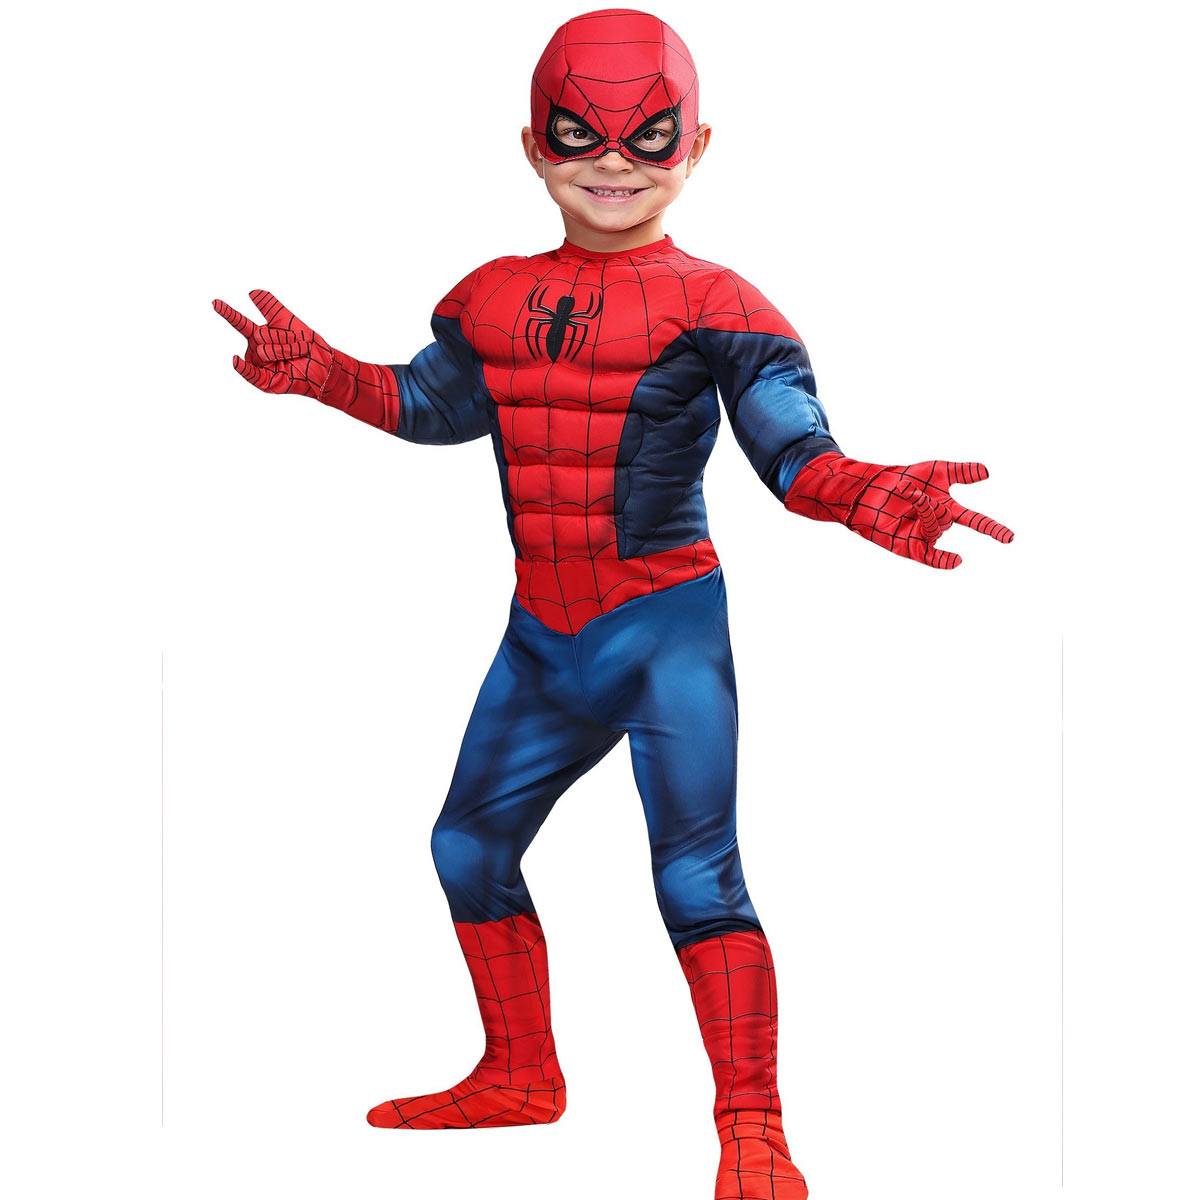 楽天市場 スパイダーマン スーツ 幼児用 コスプレ コスチューム ハロウィン 子供用 Holloween Spider Man Langelina